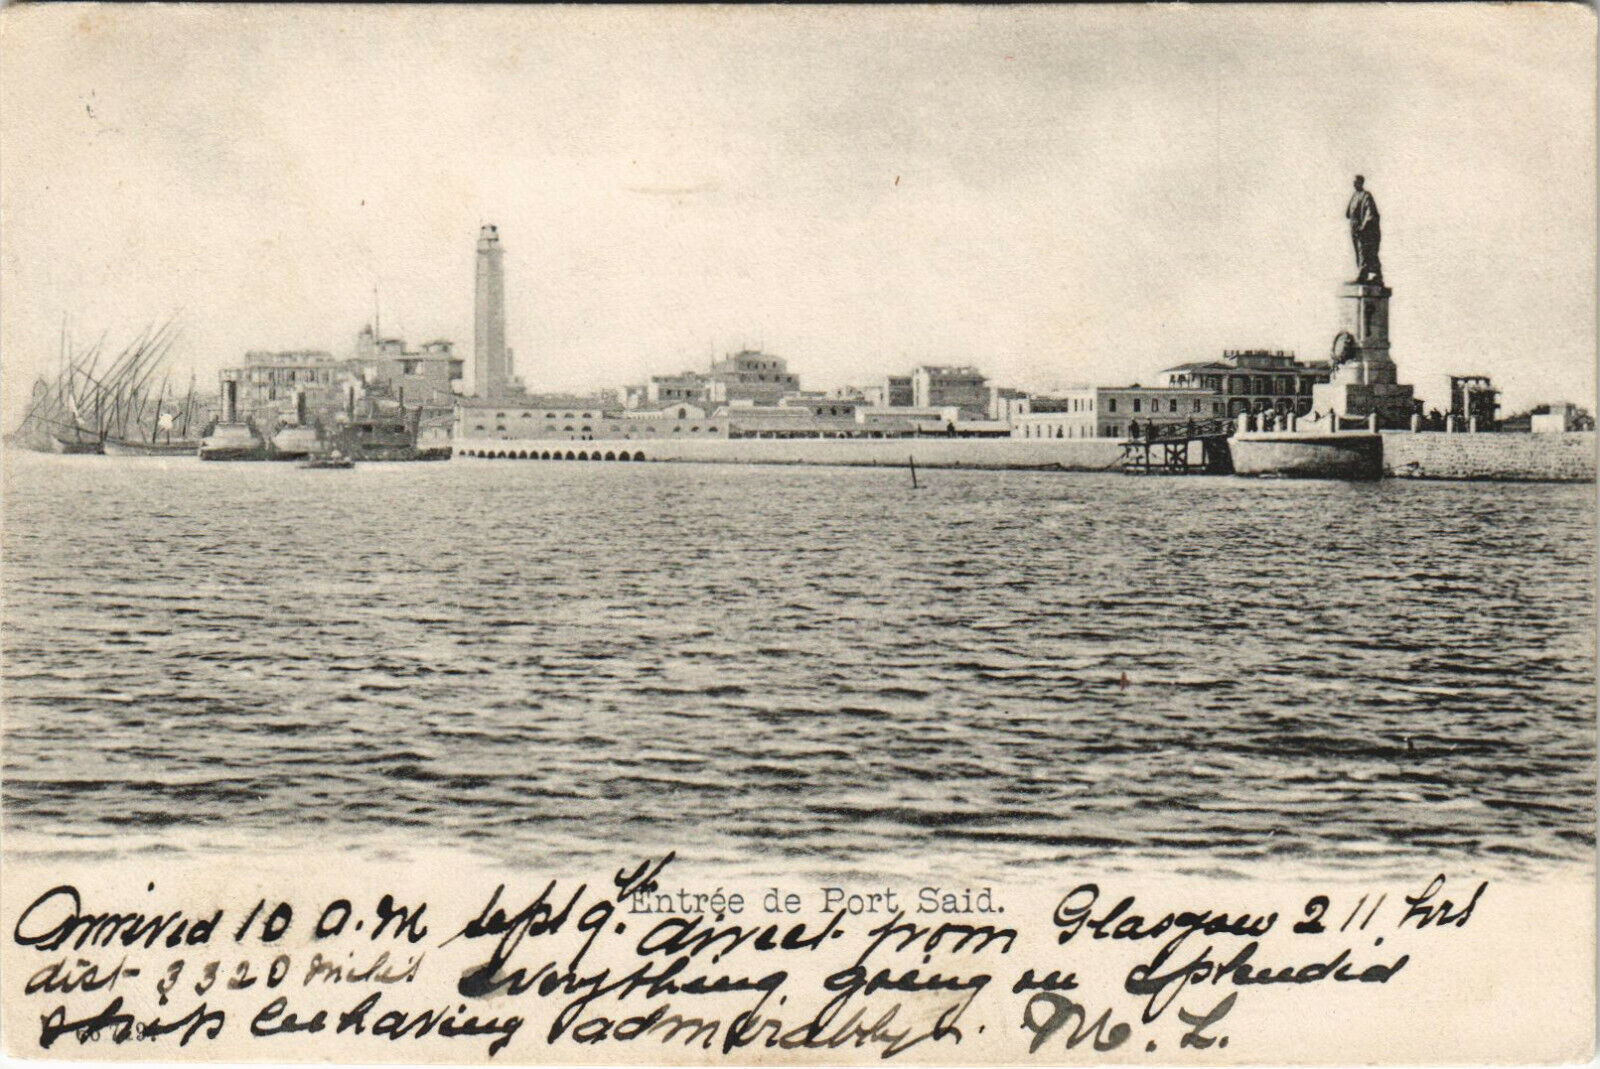 PC EGYPT, ENTRÉE DE PORT SAID, Vintage Postcard (b30561)